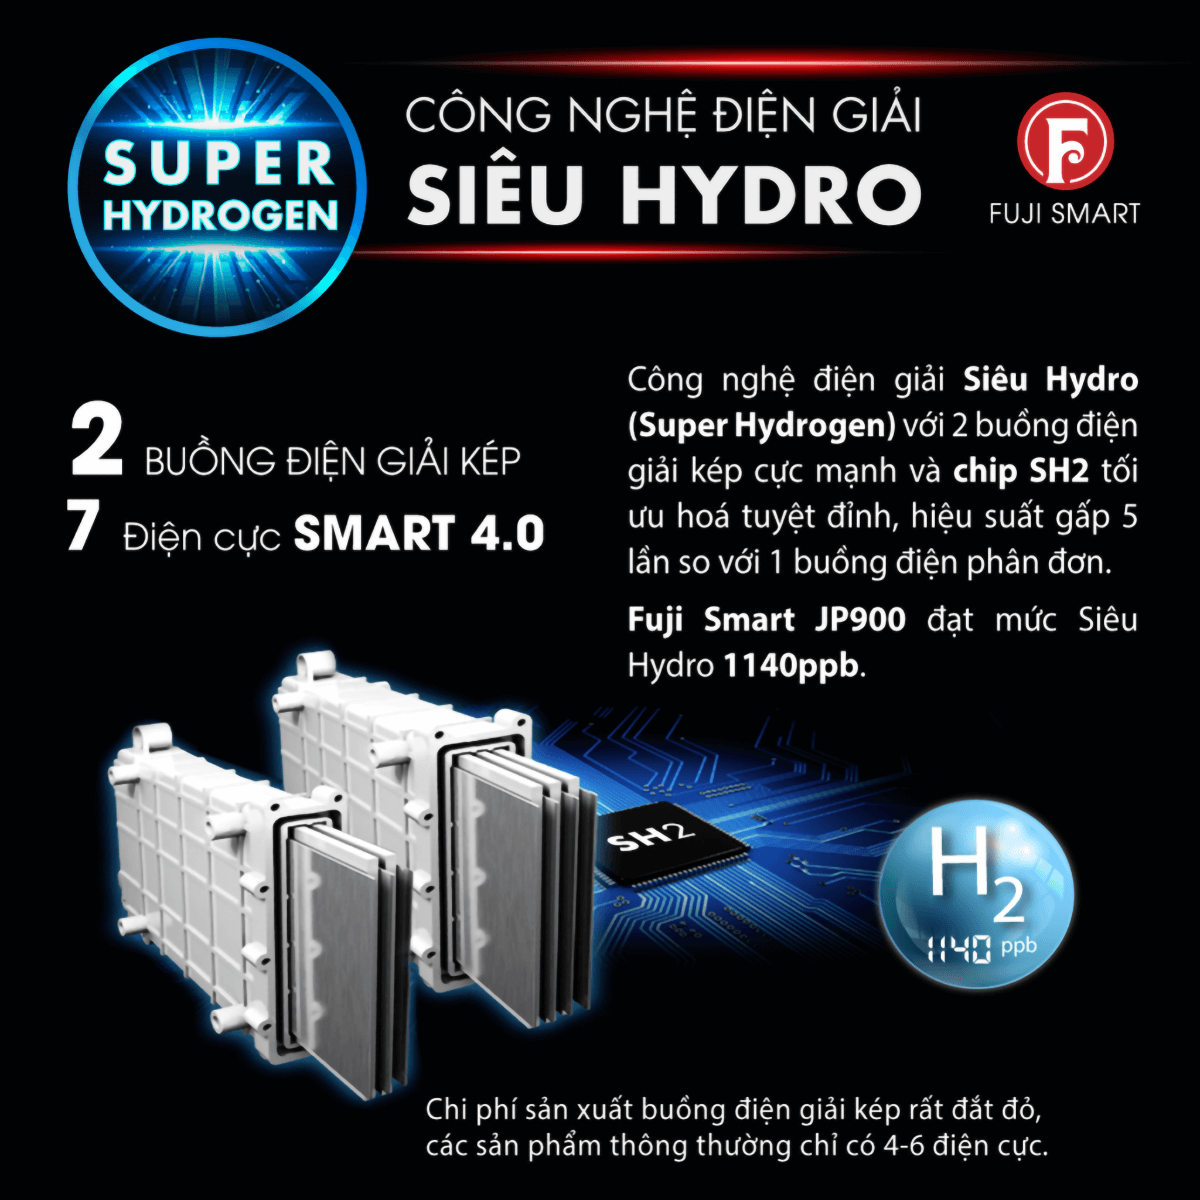 Fuji Smart JP900 tích hợp công nghệ điện giải siêu Hydro